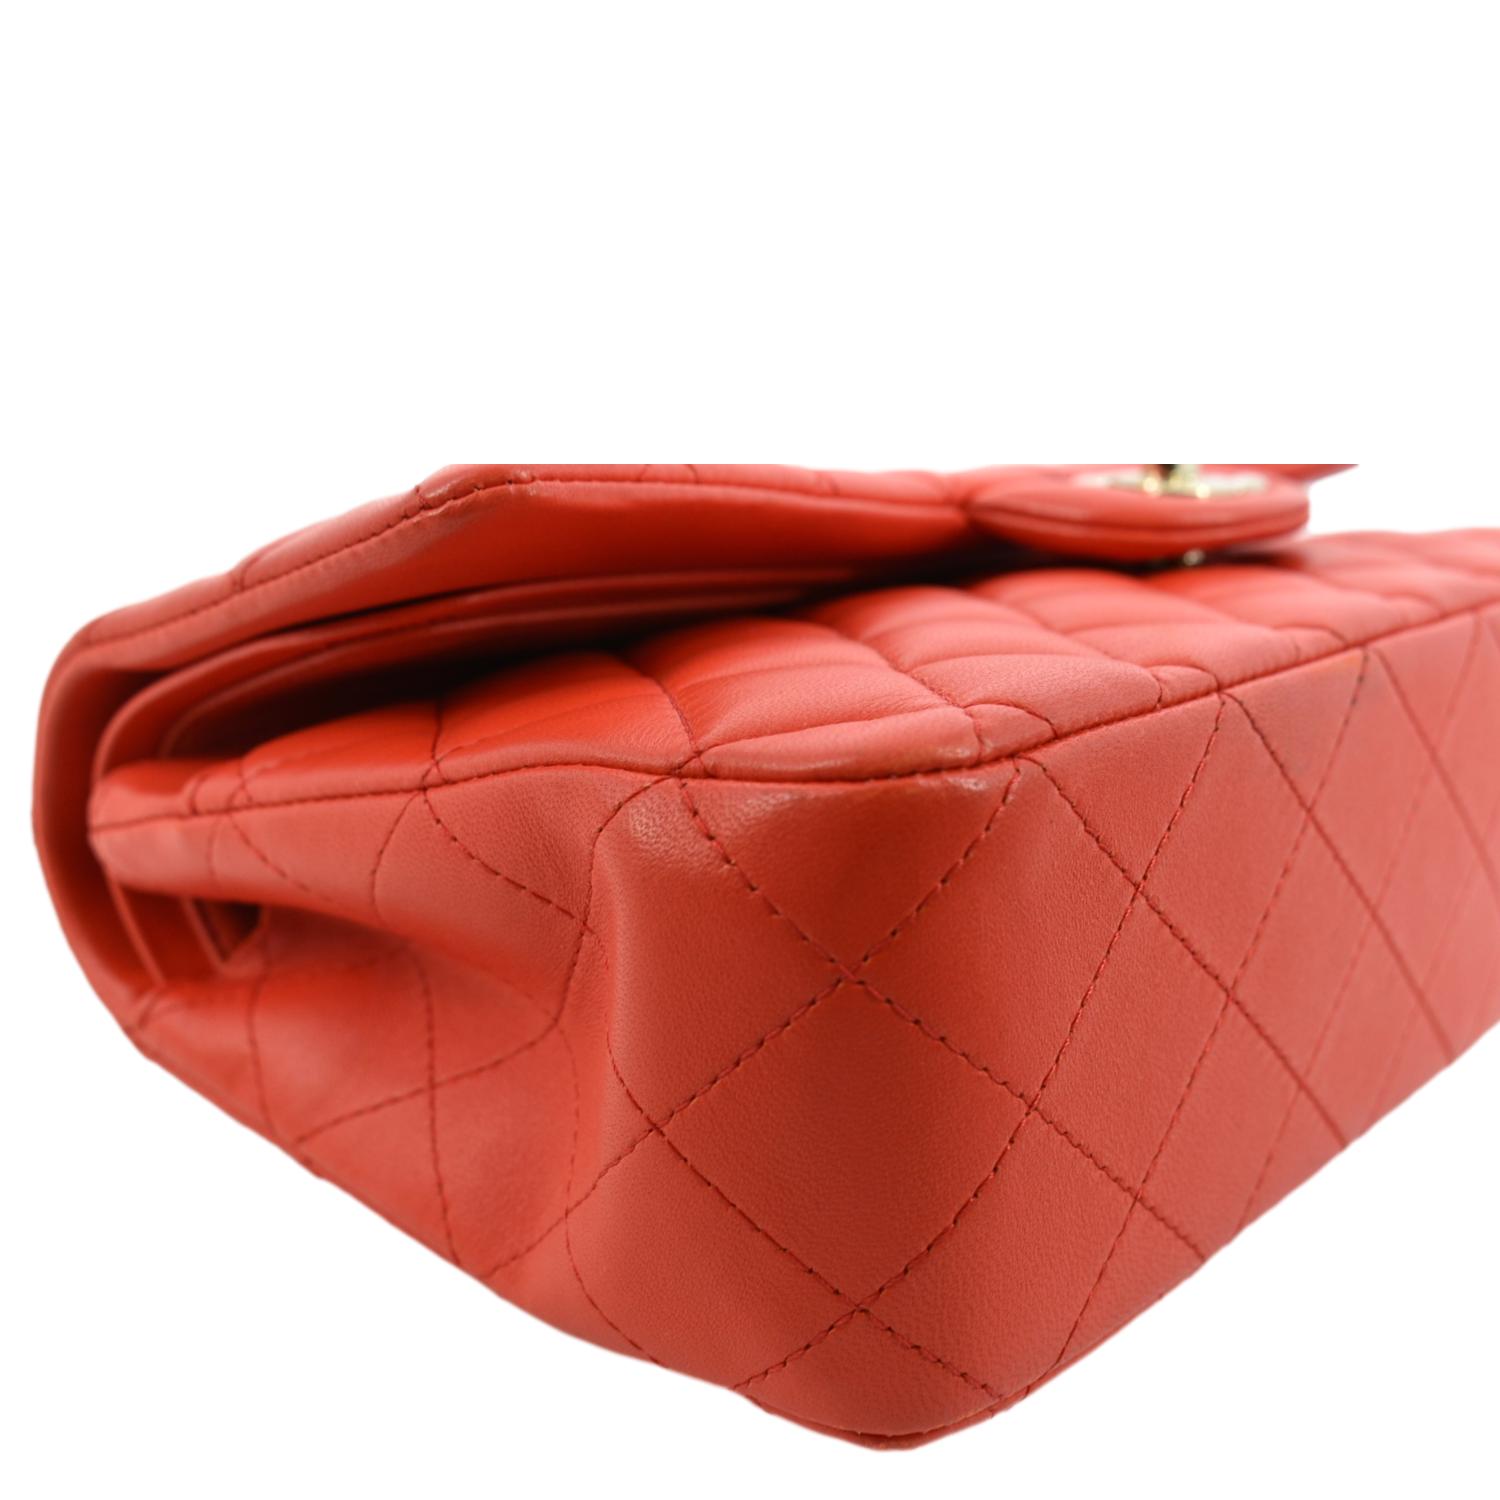 Chanel Red Travel Bag  Chanel handbags, Bags, Chanel handbags classic